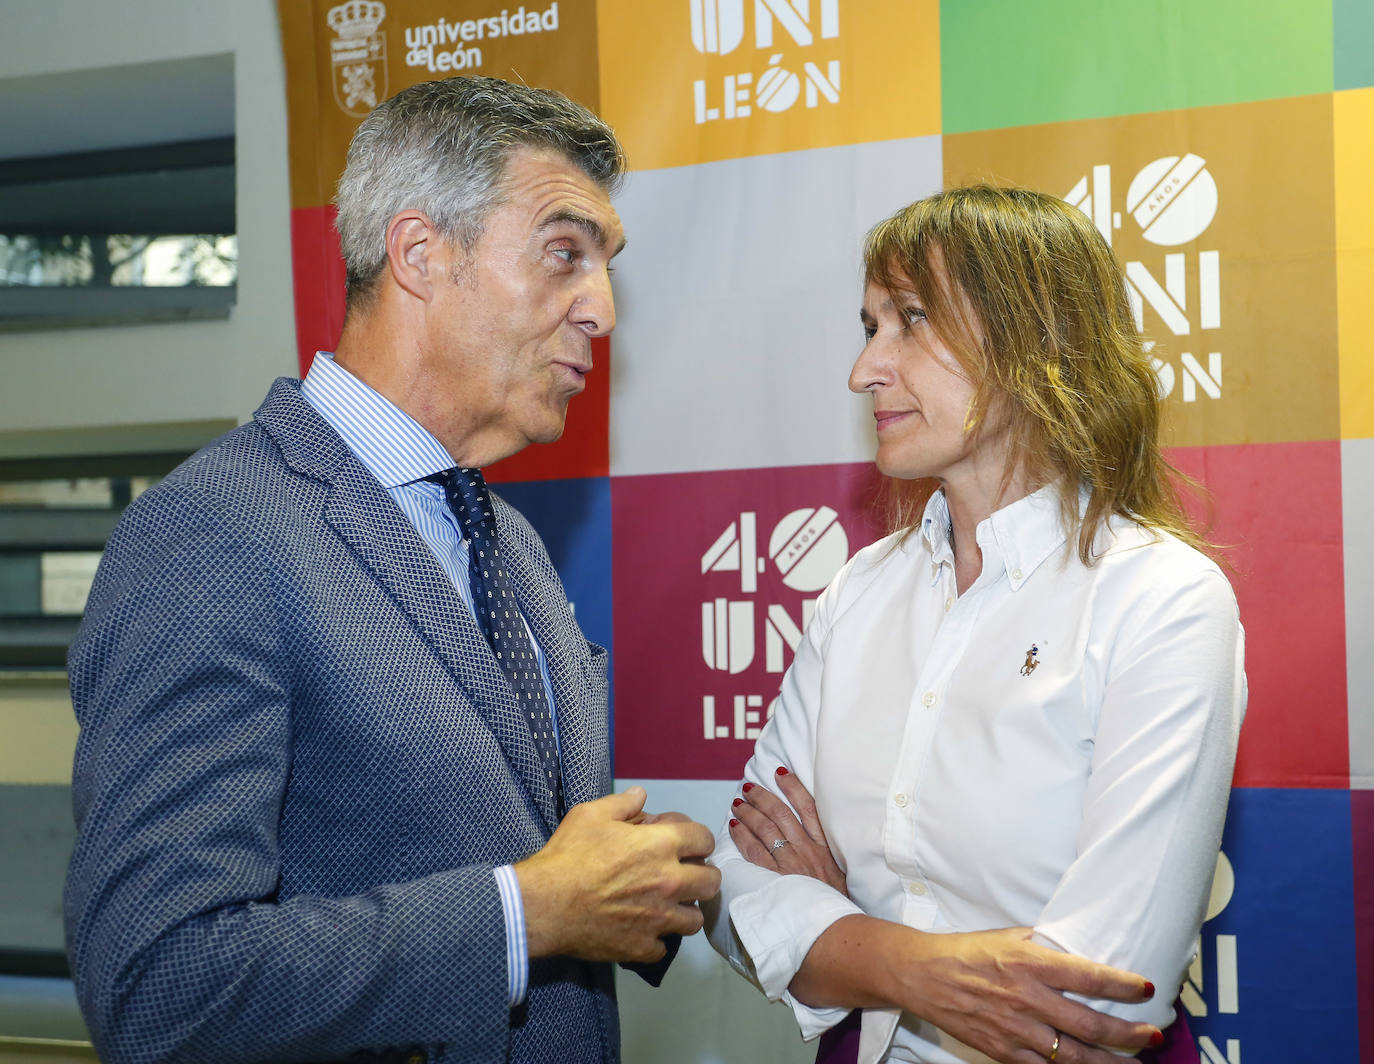 La consejera de Educación, Rocío Lucas, asiste a la gala conmemorativa del 40 aniversario de la Universidad de León. Junto a ella, el presidente del Consejo Social, Javier Cepedano